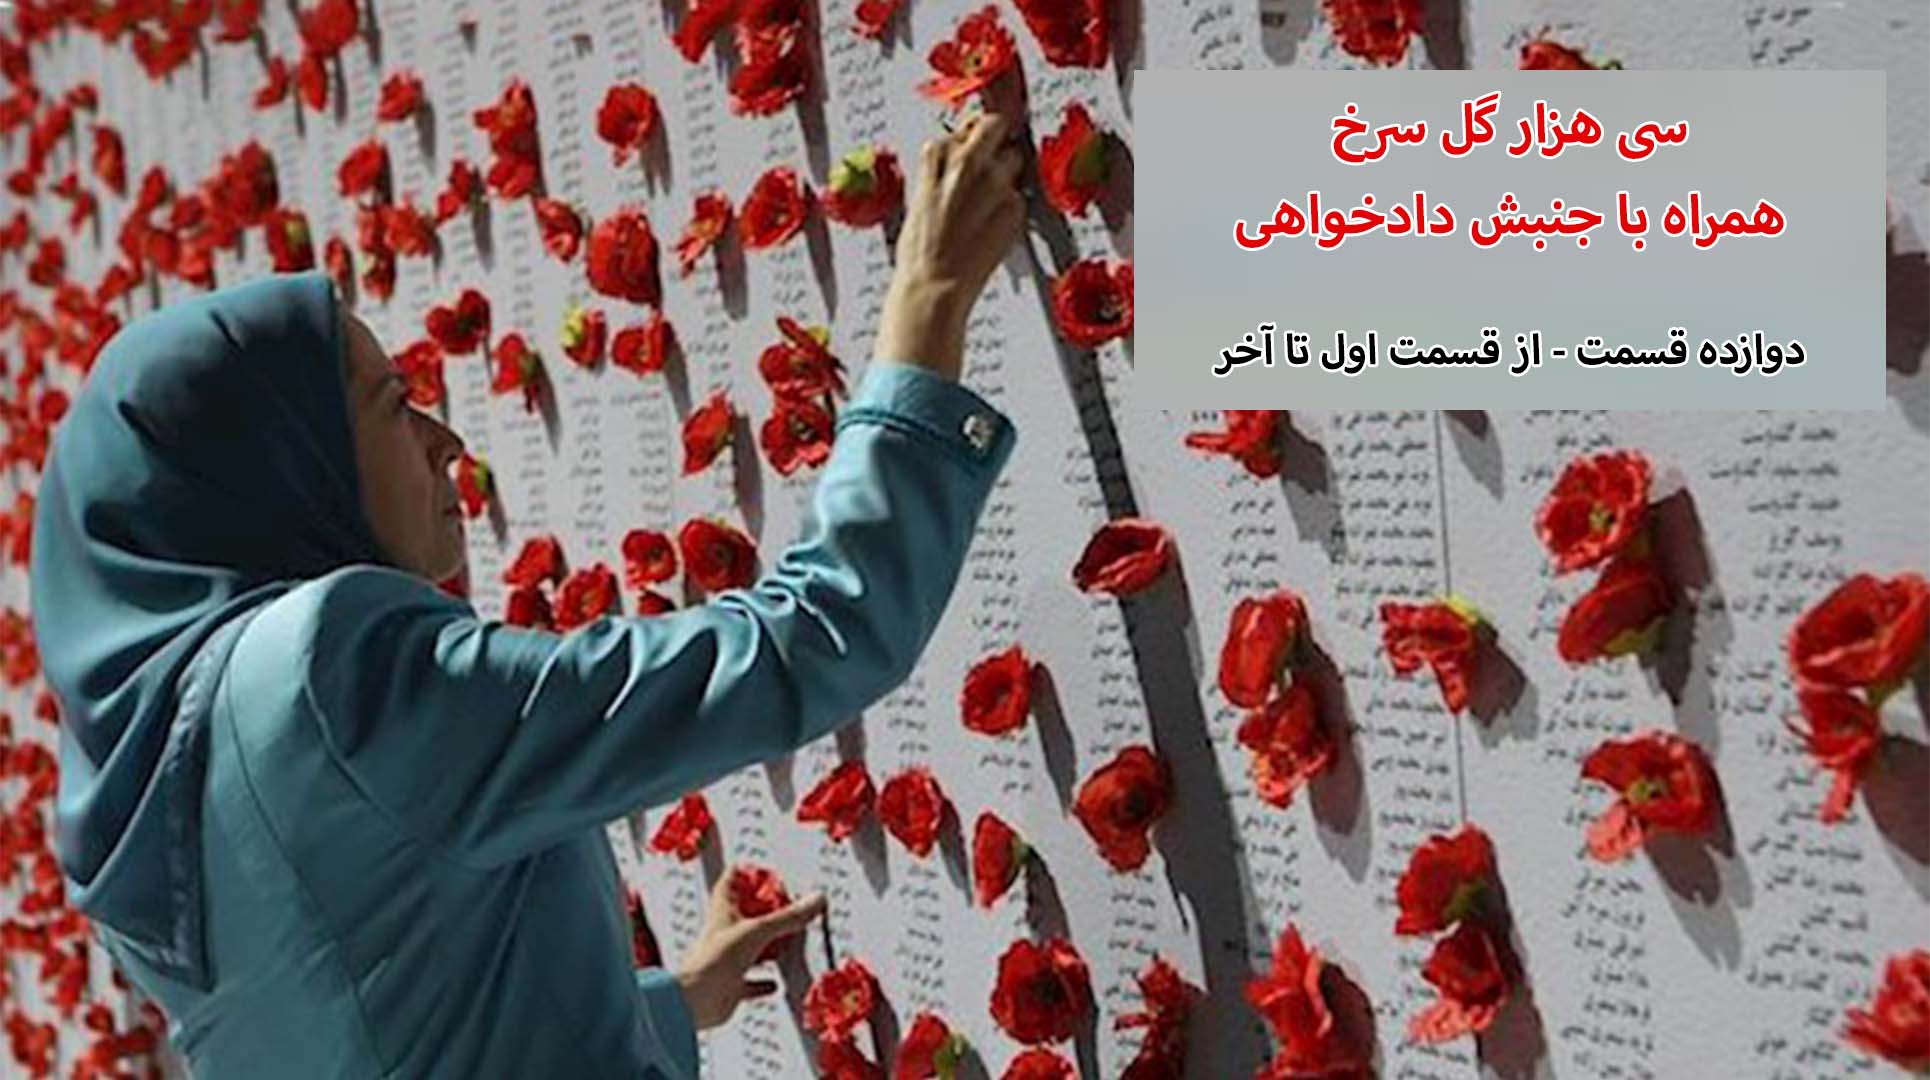 سی هزار گل سرخ - همراه با جنبش دادخواهی - از قسمت اول تا دوازده - (آخر)